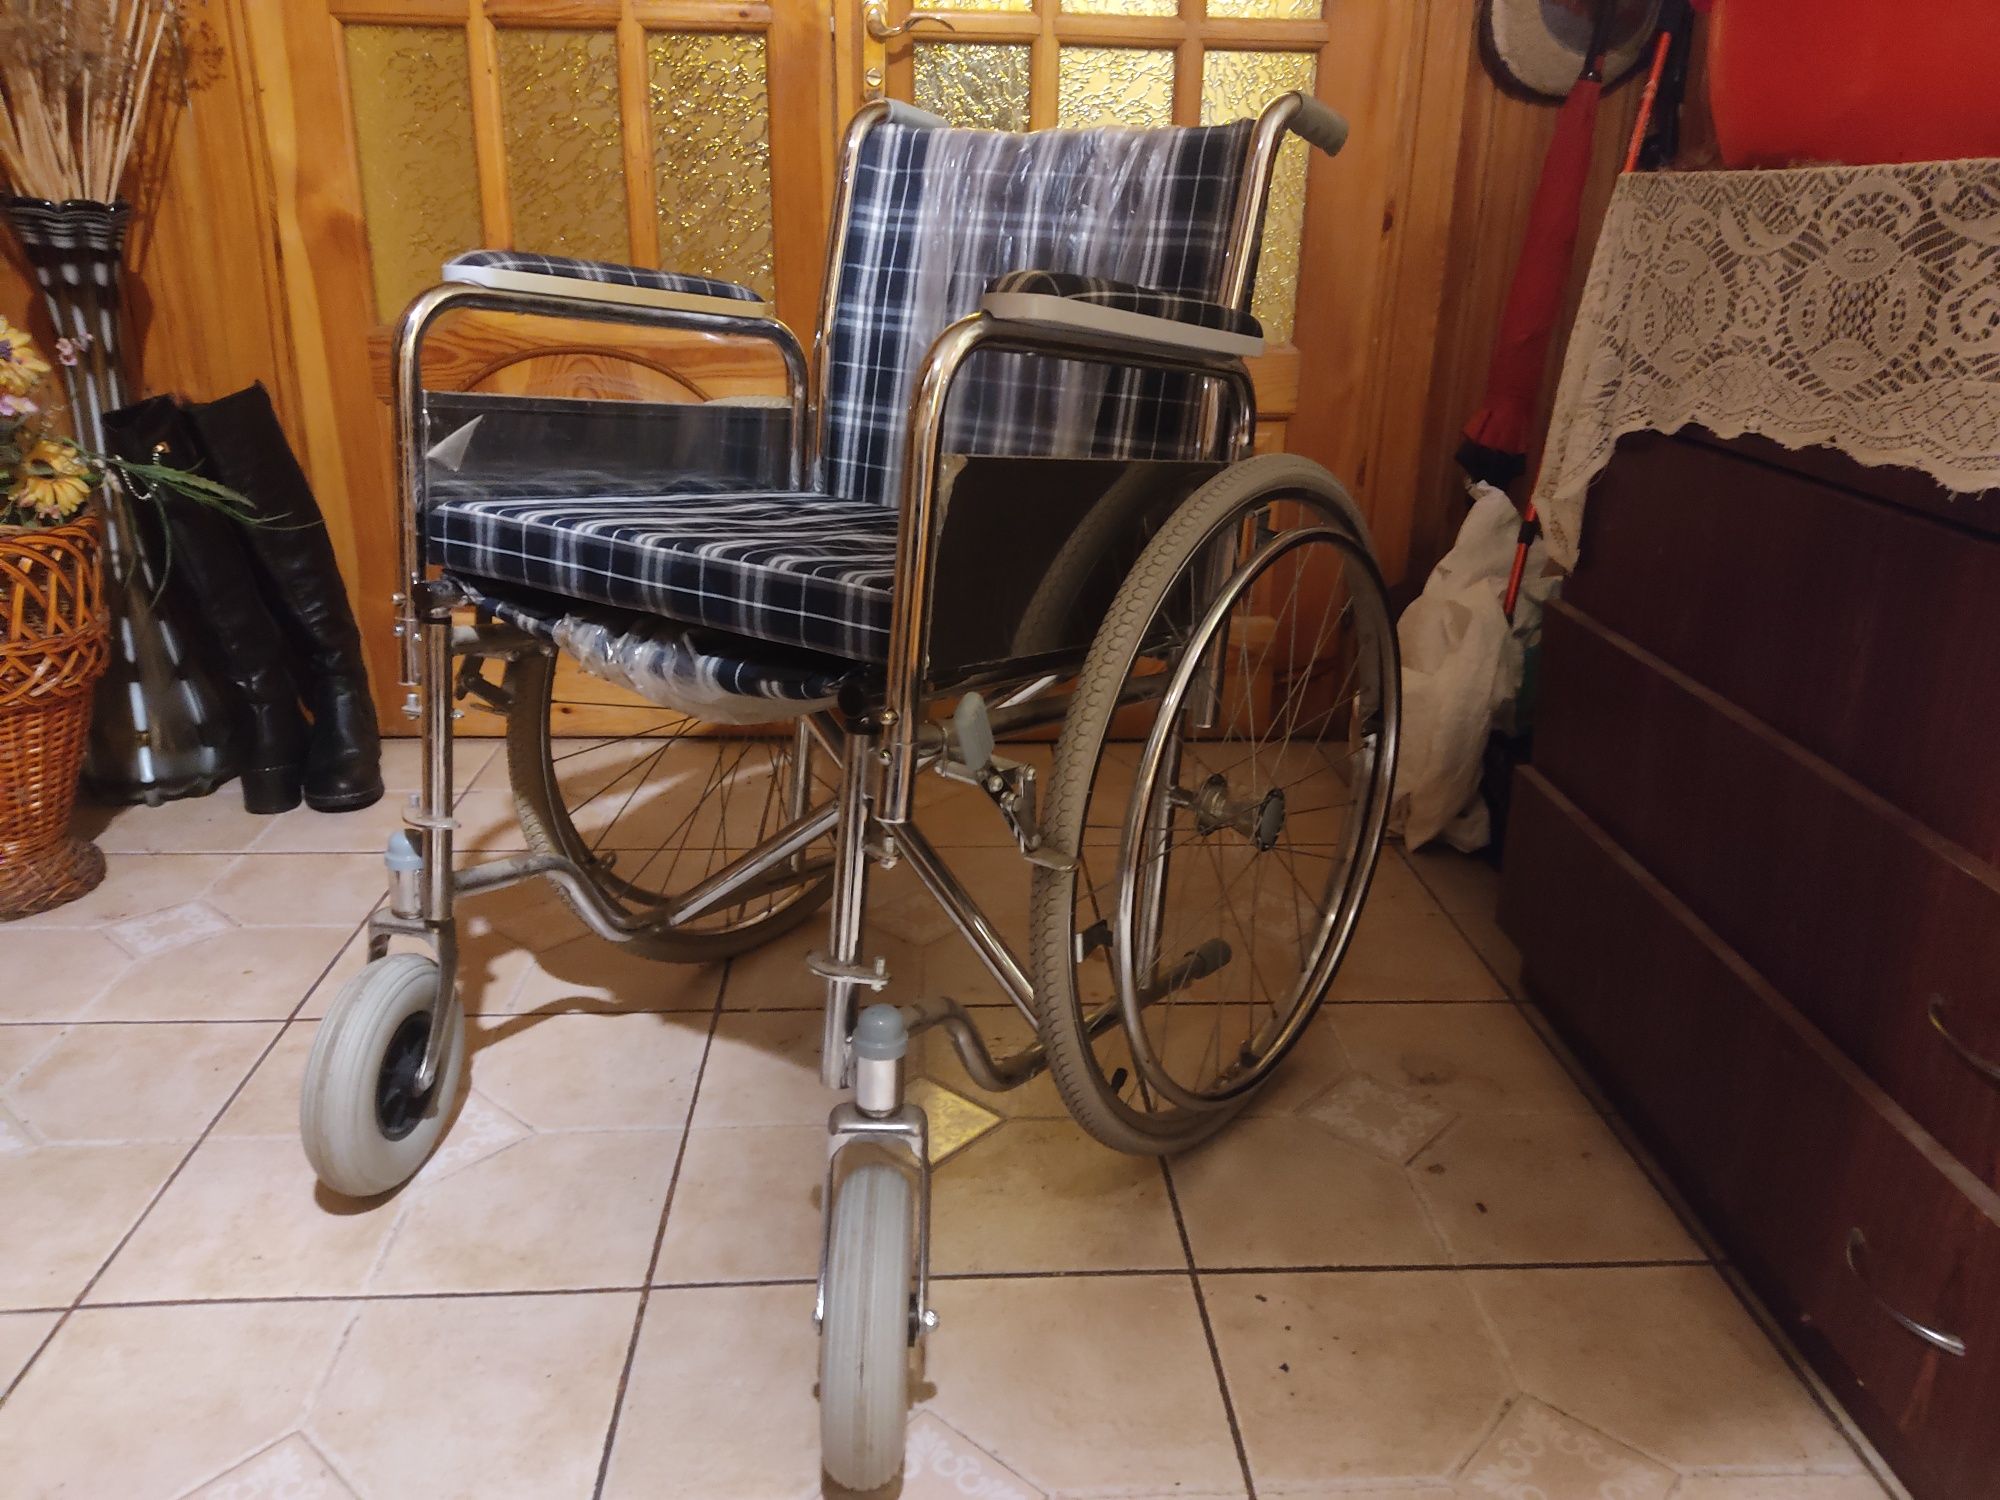 Продам коляску для инвалидов